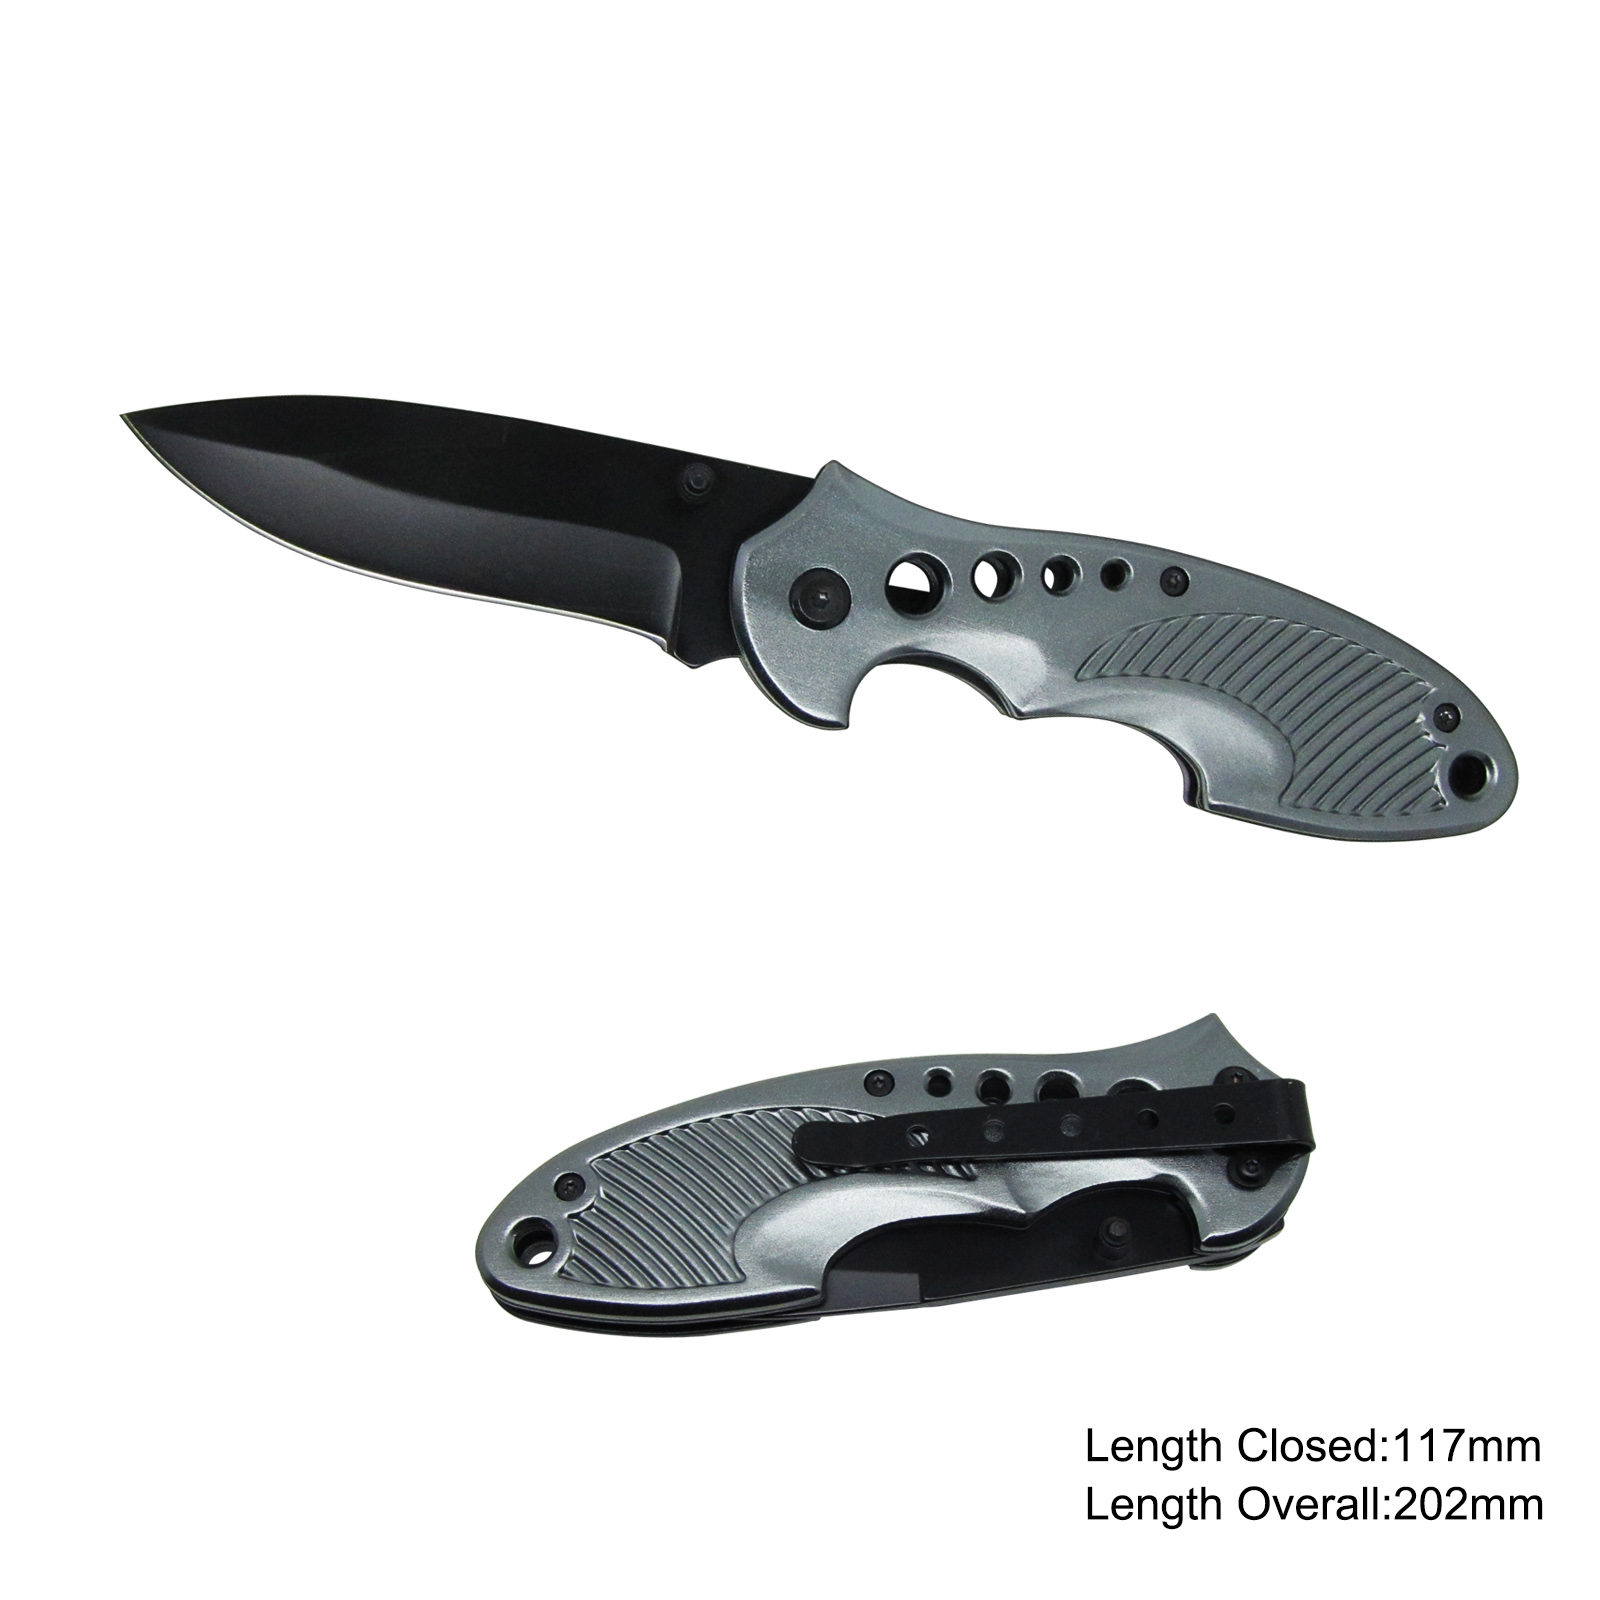 #3632 Folding Knife with Anodized Aluminum Handle